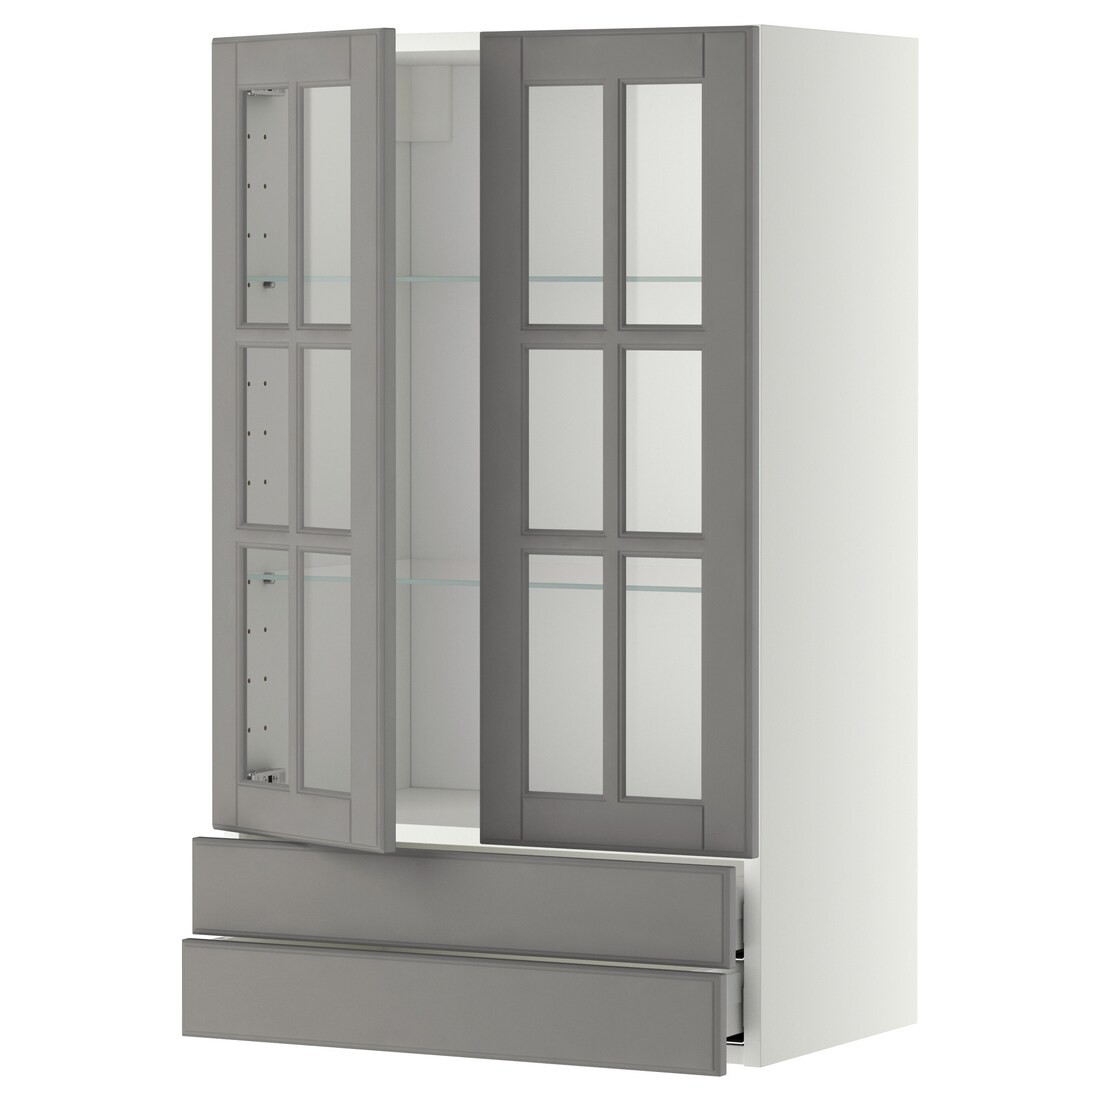 IKEA METOD МЕТОД / MAXIMERA МАКСИМЕРА Навесной шкаф / 2 стеклянные дверцы / 2 ящика, белый / Bodbyn серый, 60x100 см 59394972 | 593.949.72